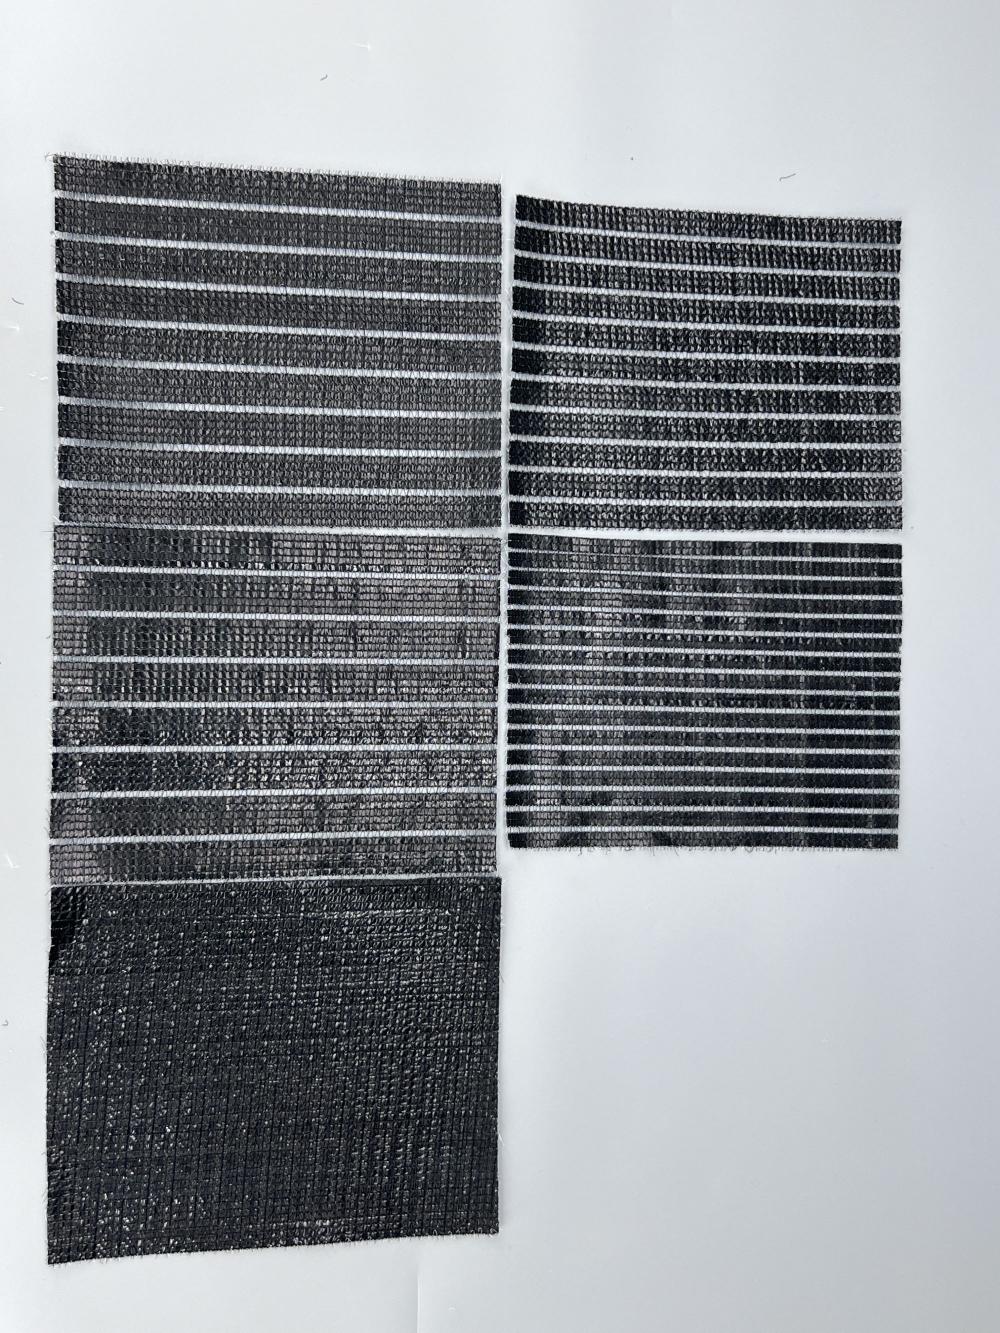 Black and white plastic aluminum foil sunshade net